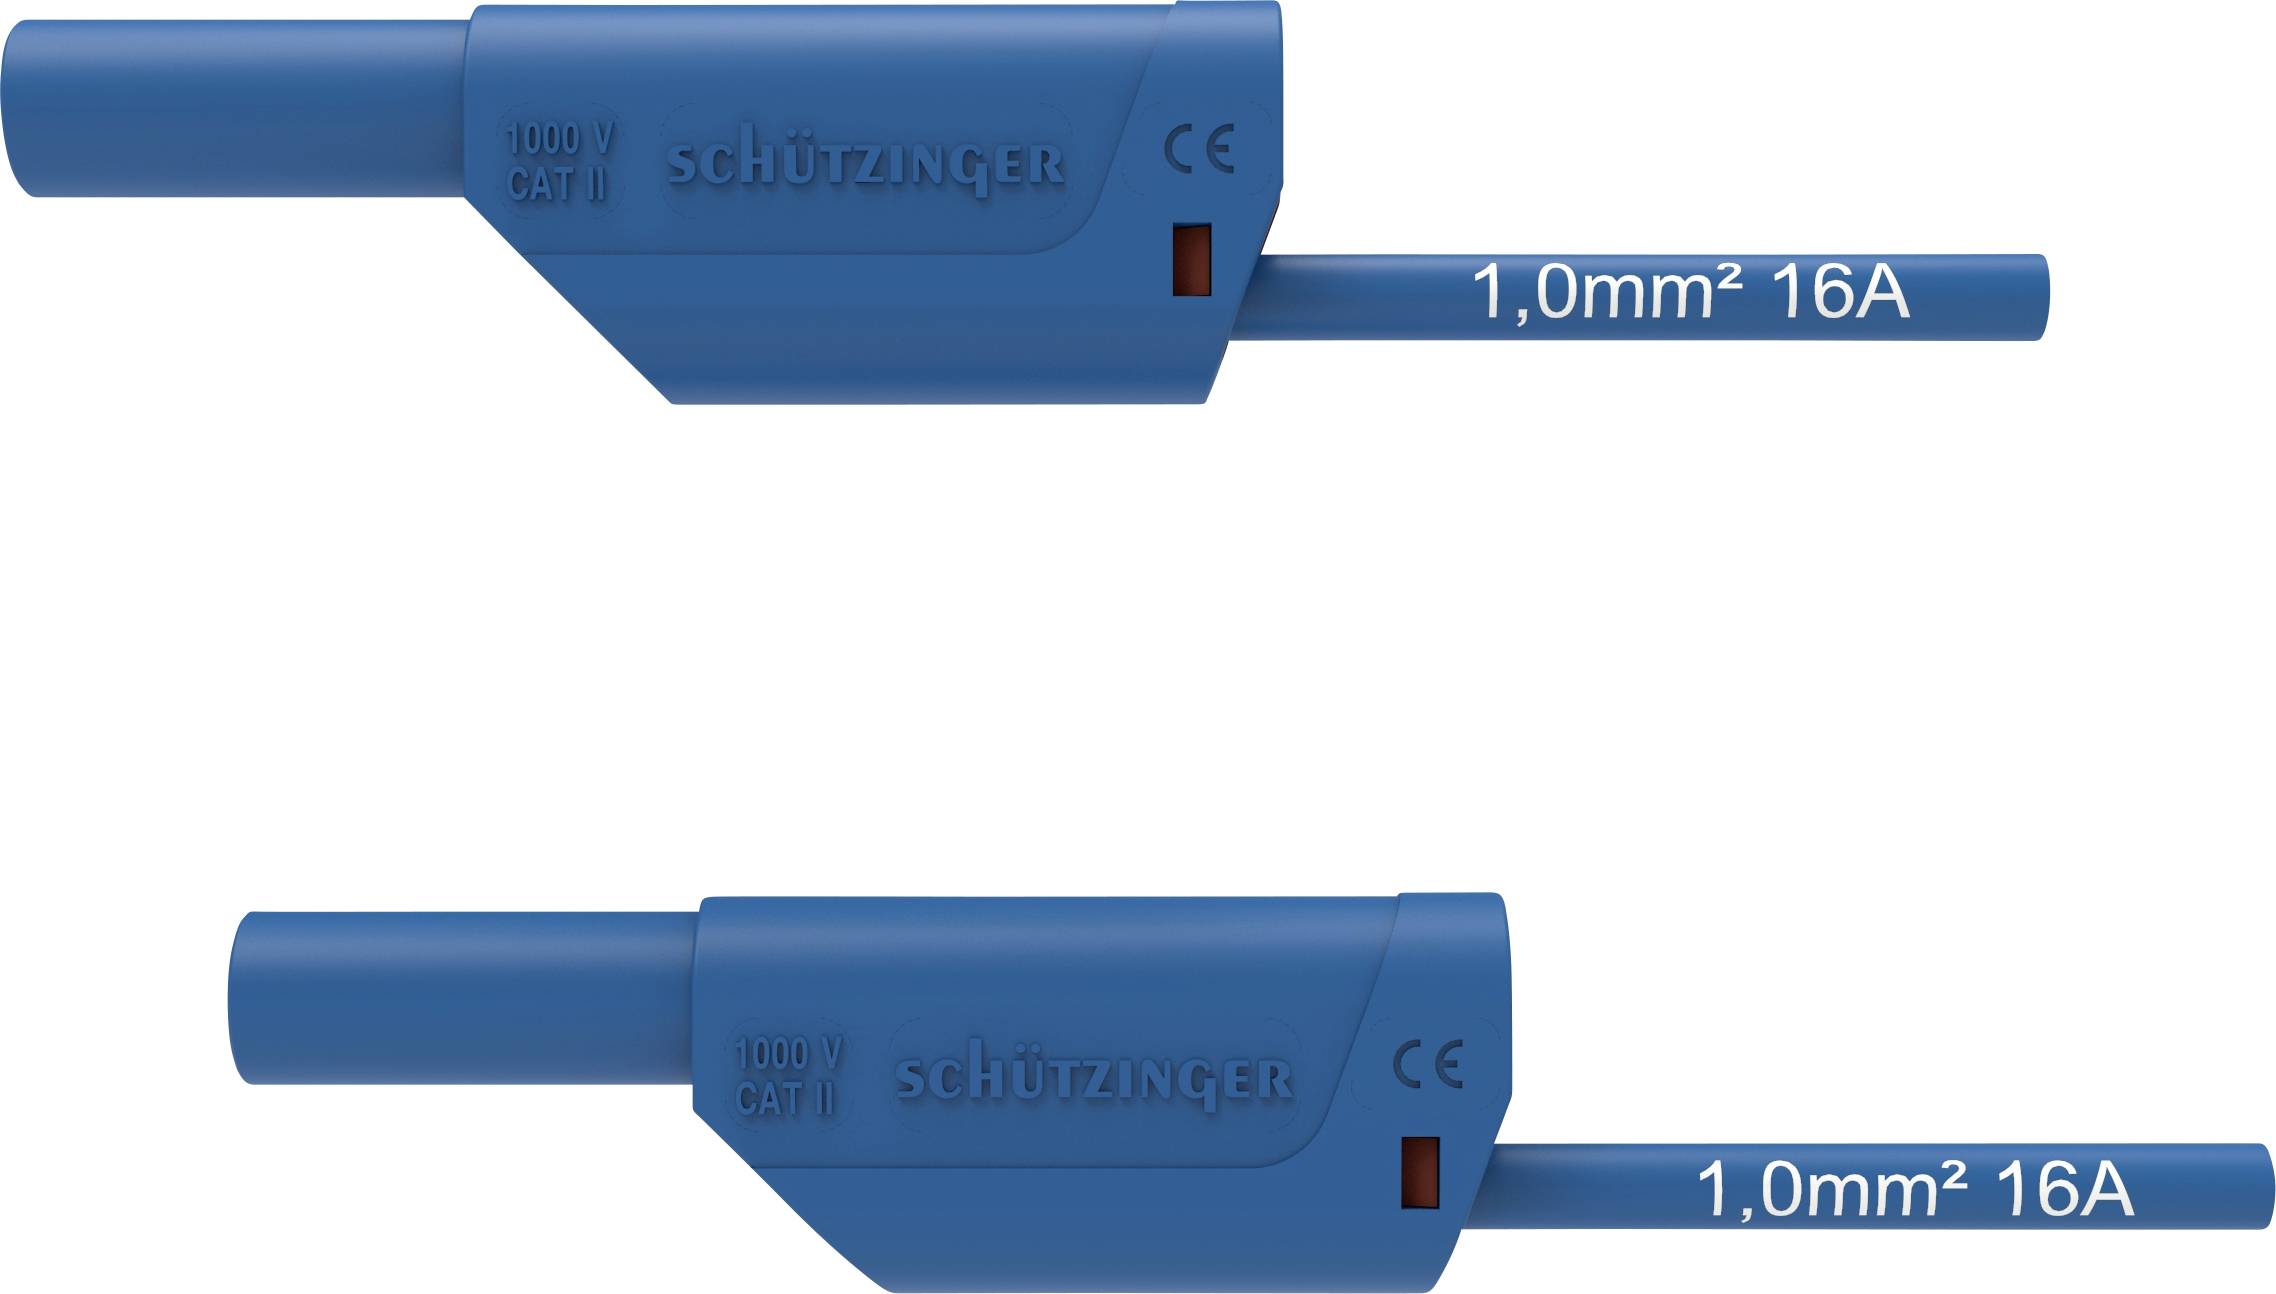 SCHÜTZINGER VSFK 8500 / 1 / 200 / BL Sicherheits-Messleitung [4 mm-Stecker - 4 mm-Stecker] 200.